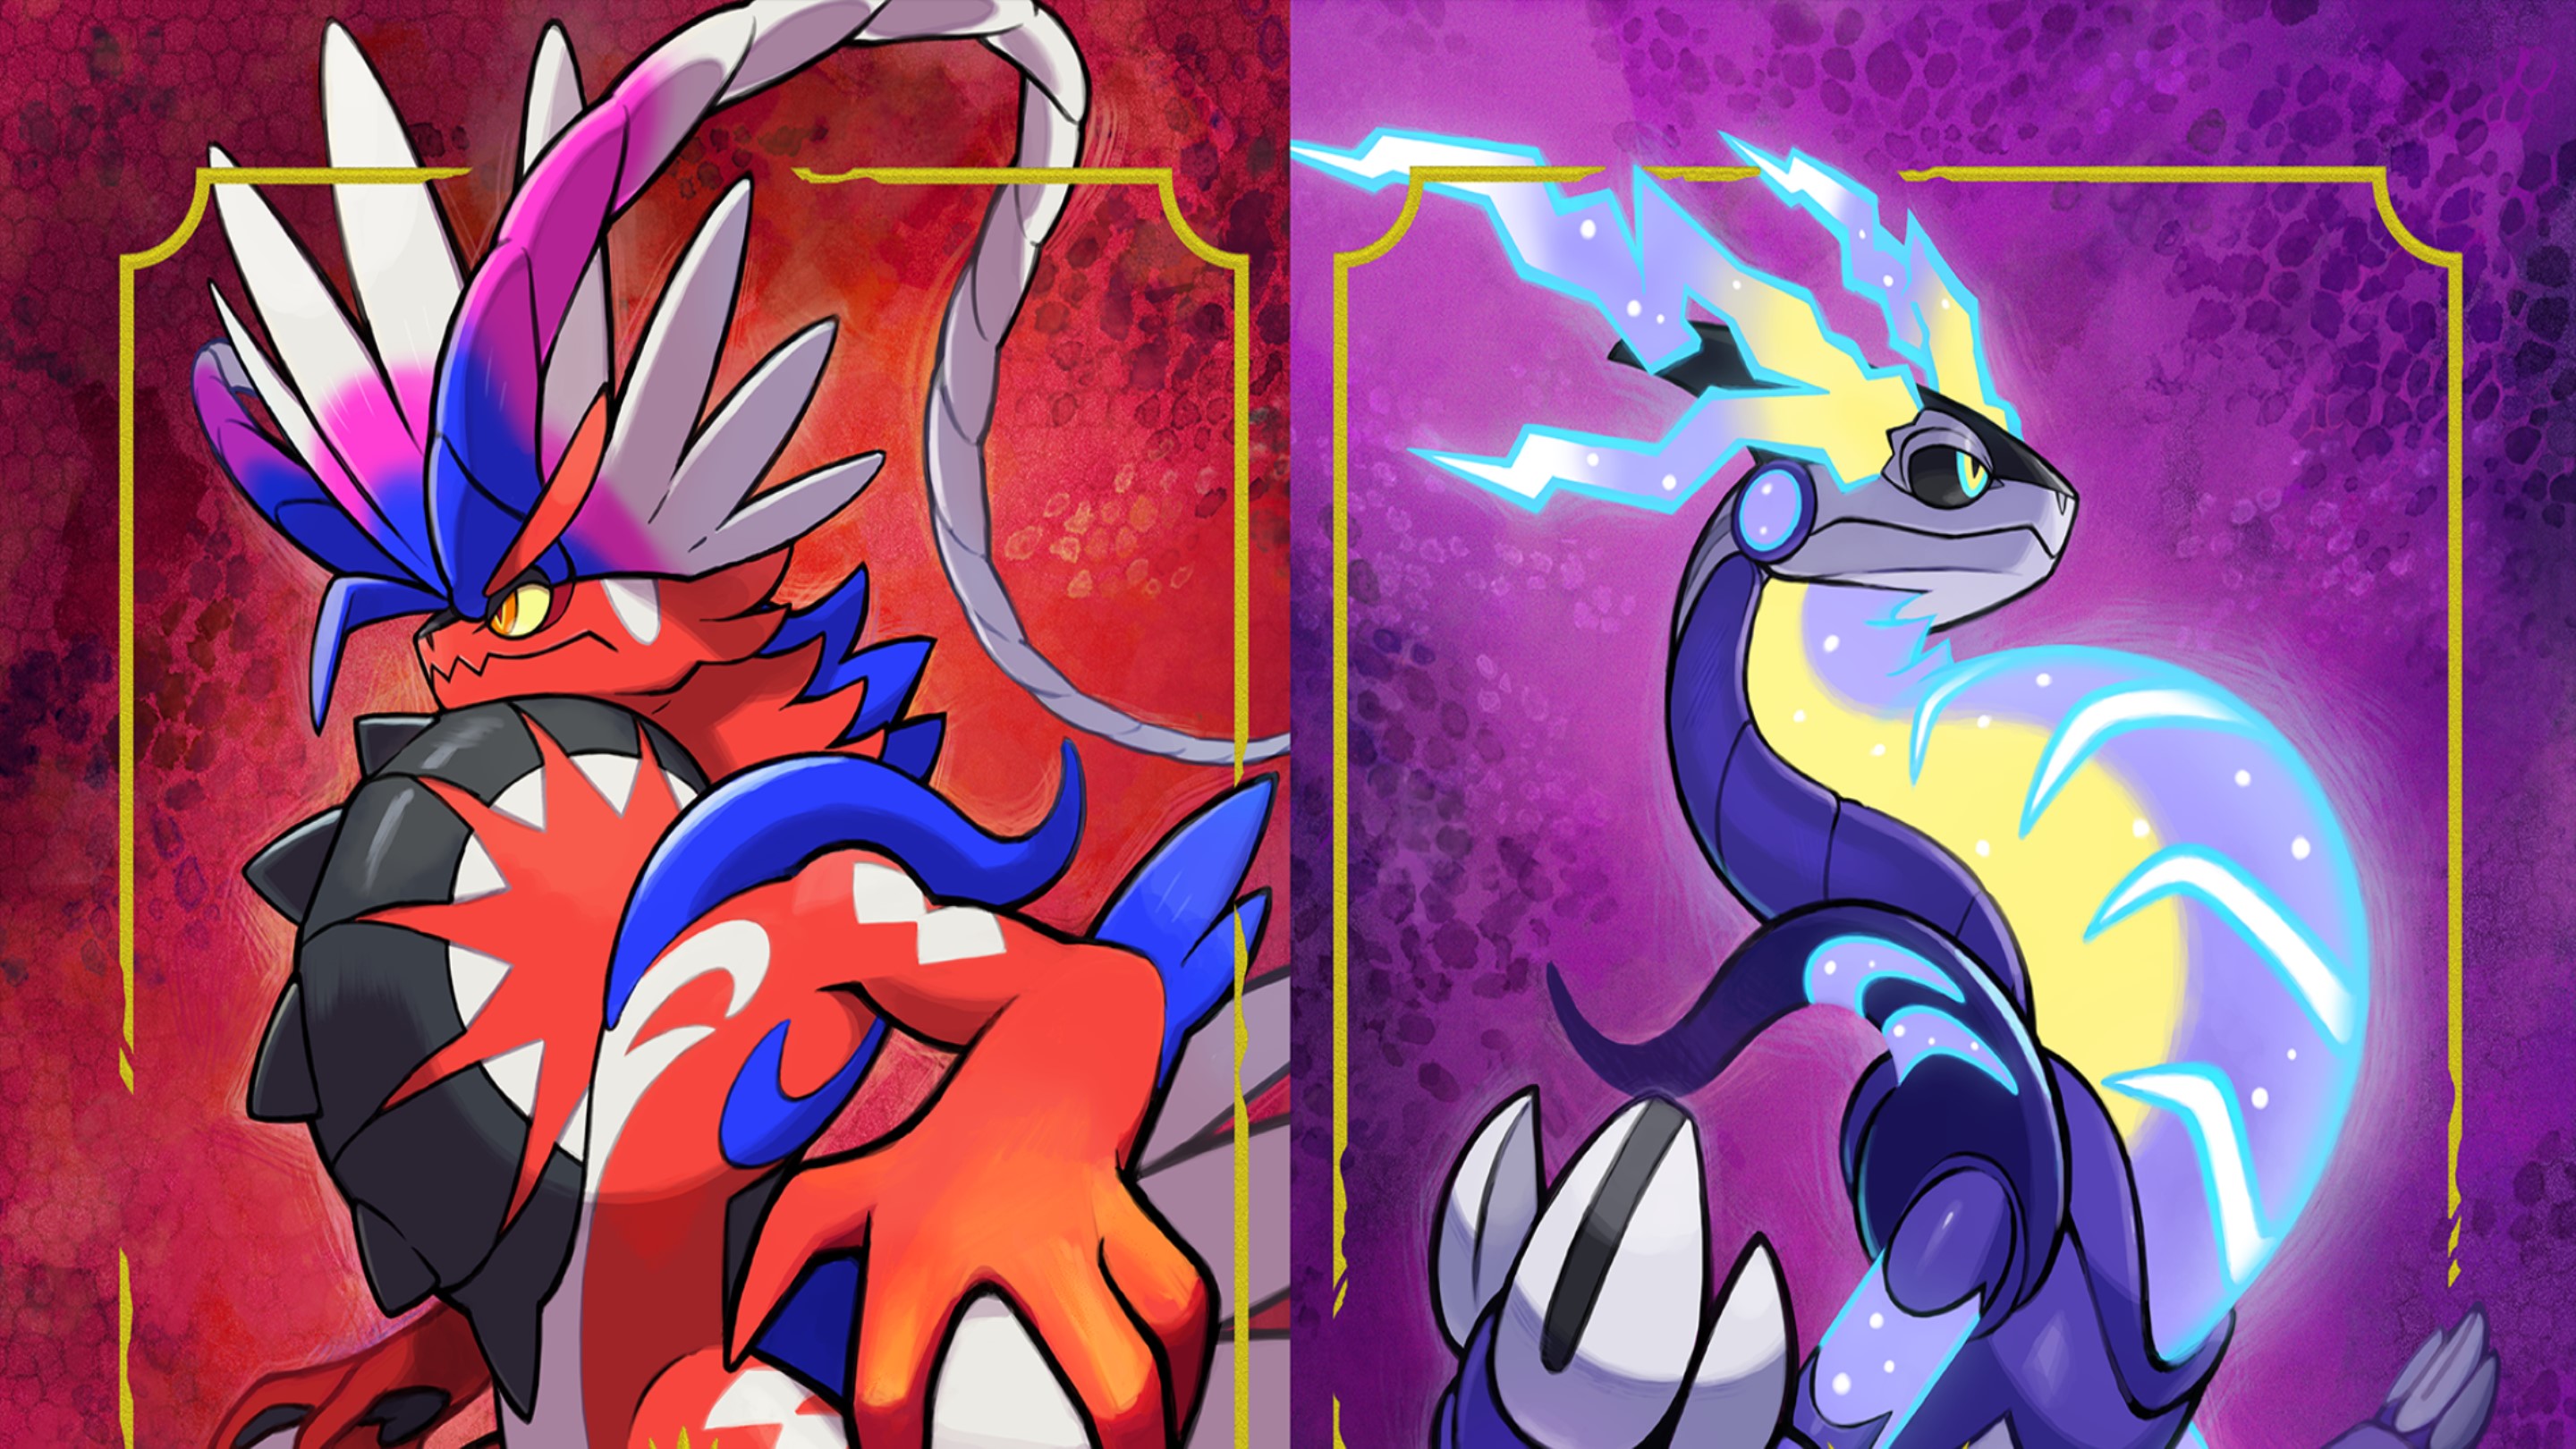 Cómo obtener la Medalla de tipo Hielo en Pokémon Escarlata y Púrpura -  Travesía de la victoria - Guía Pokémon Escarlata y Púrpura (2023)